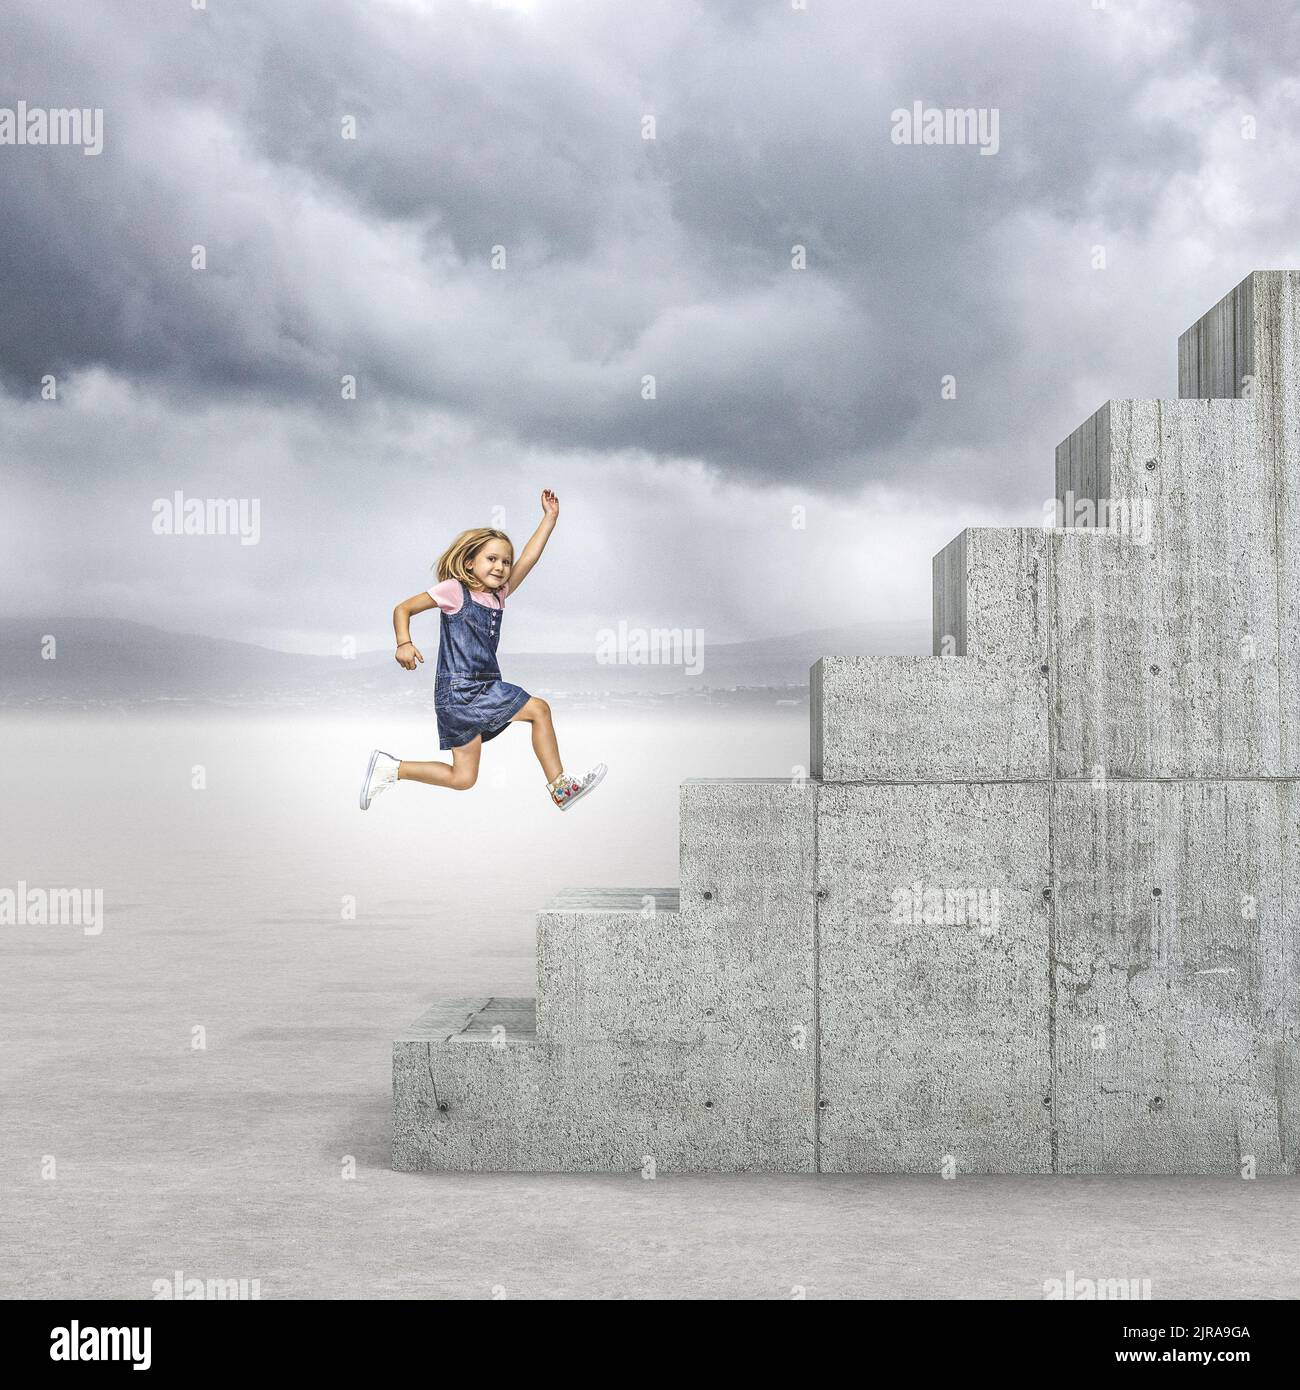 una chica corre para subir una larga escalera de hormigón Foto de stock